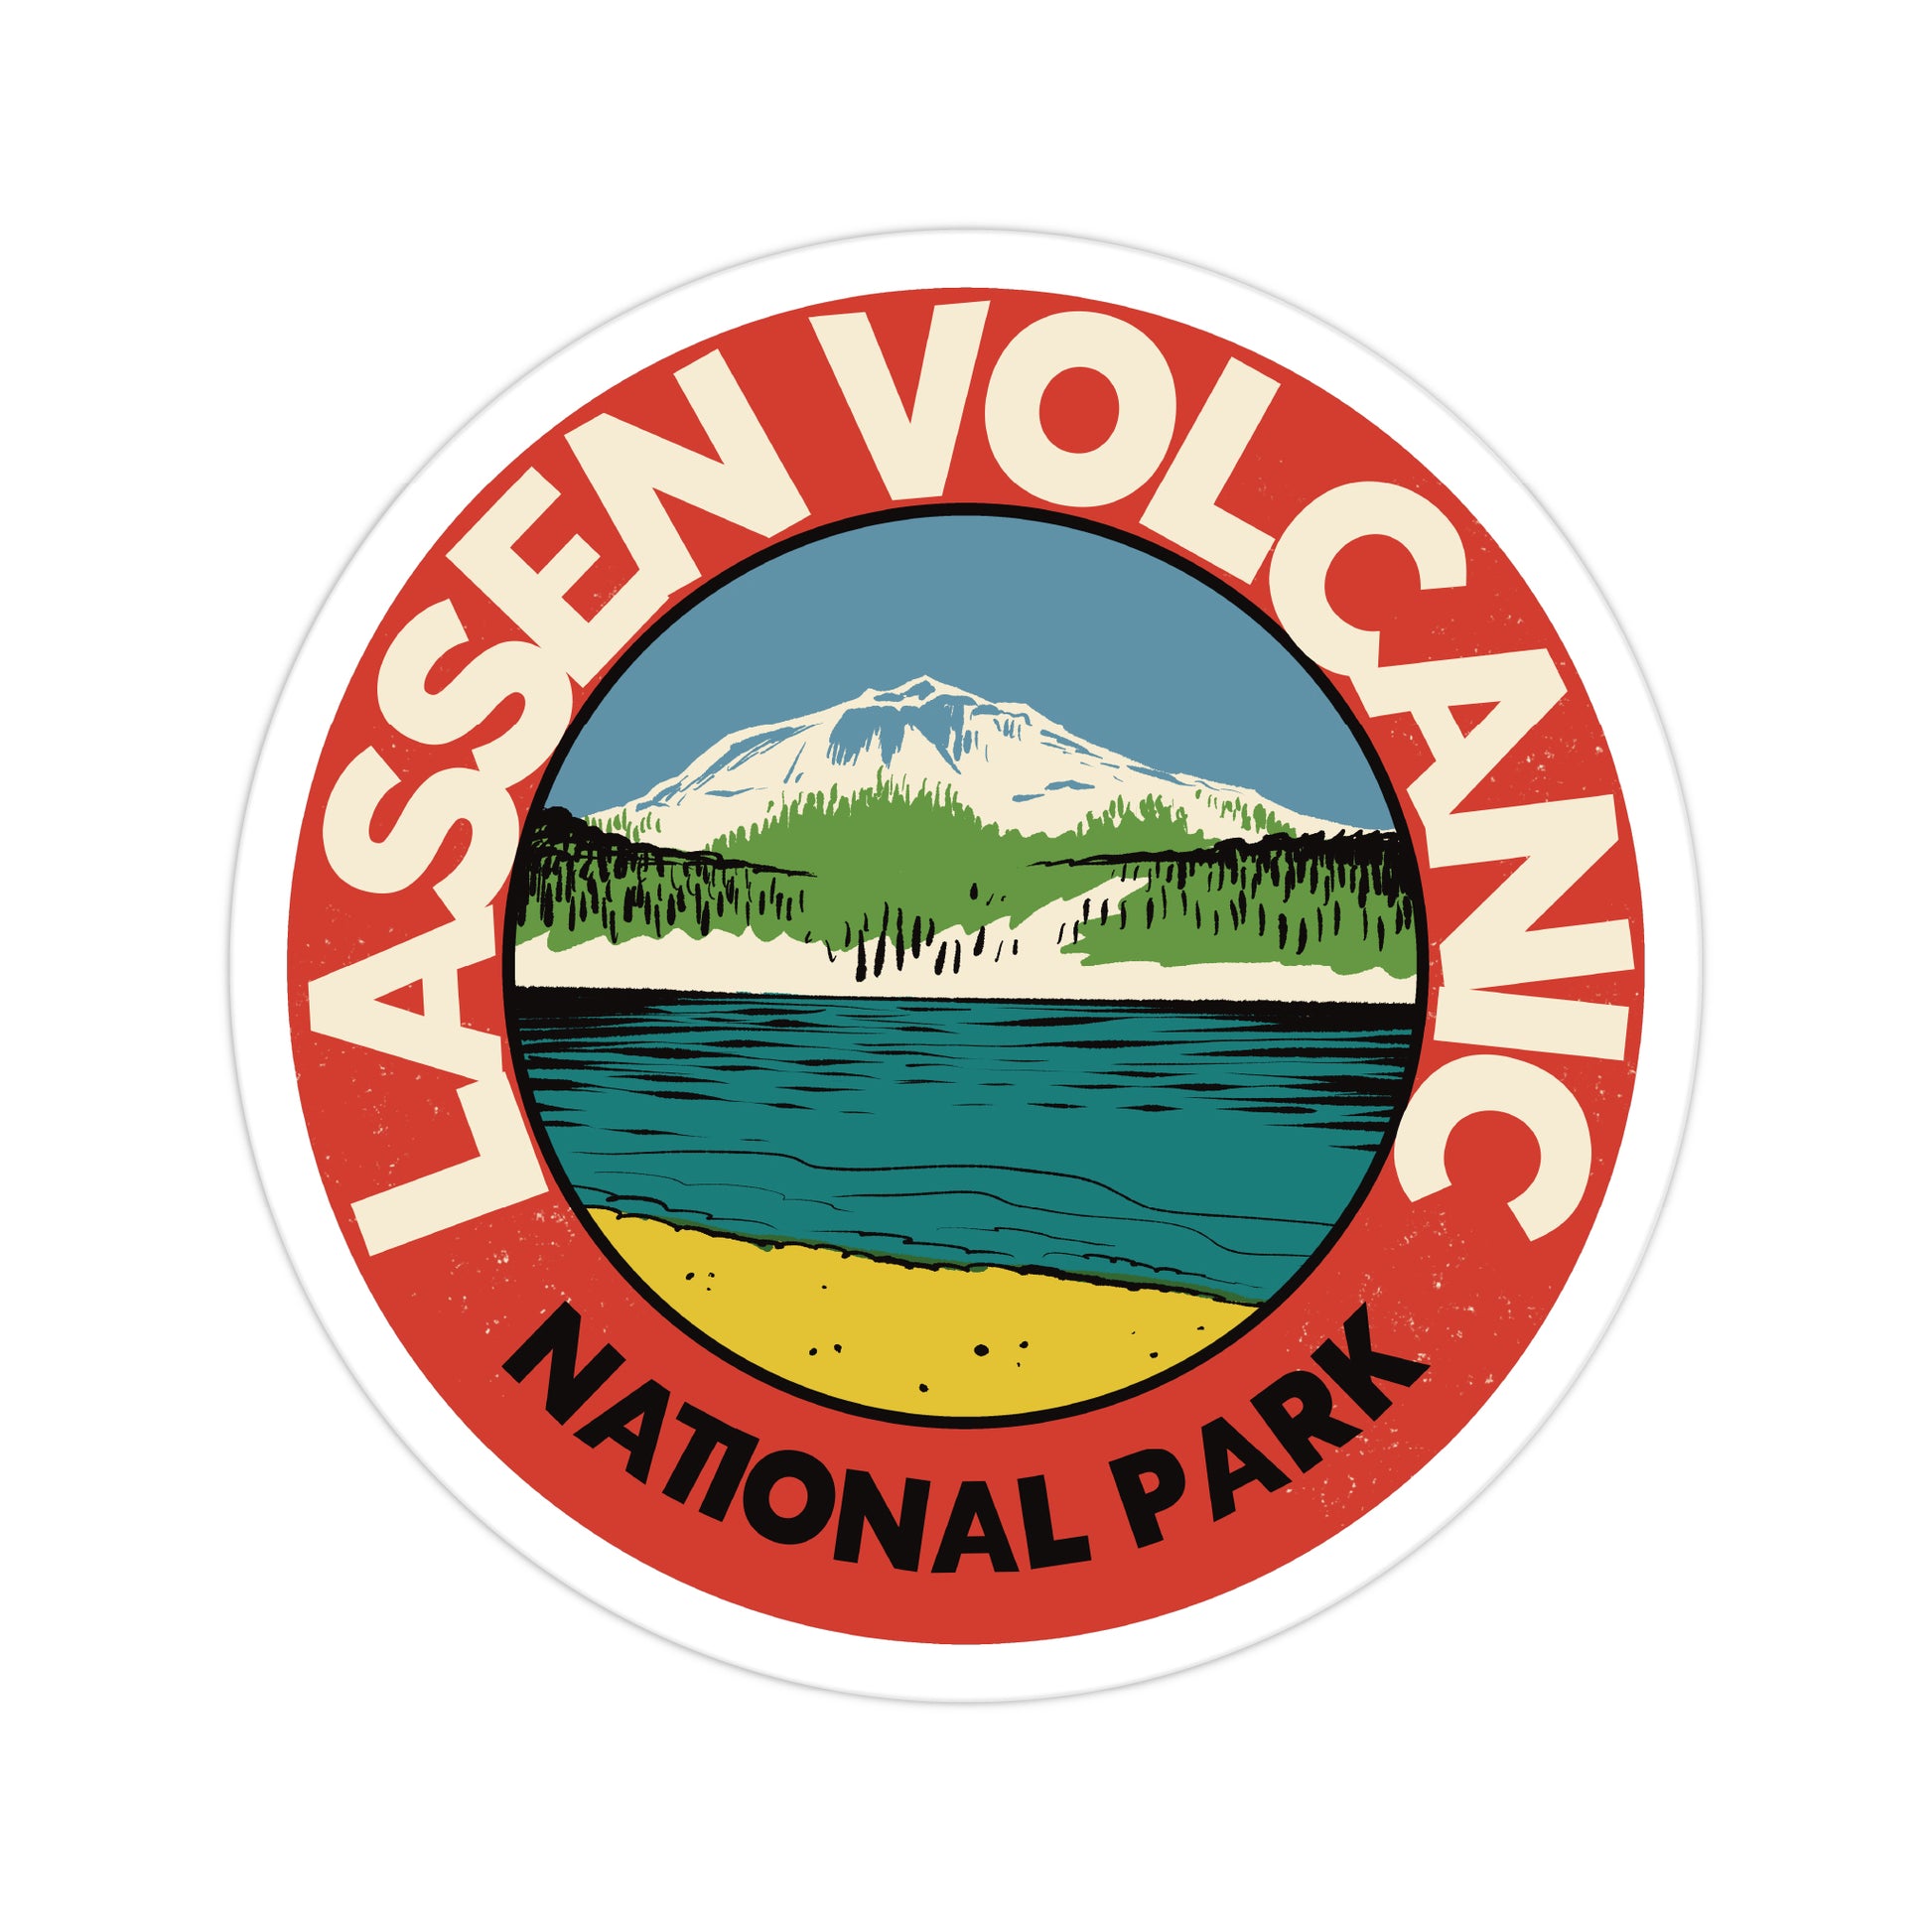 A sticker of Lassen Volcanic National Park